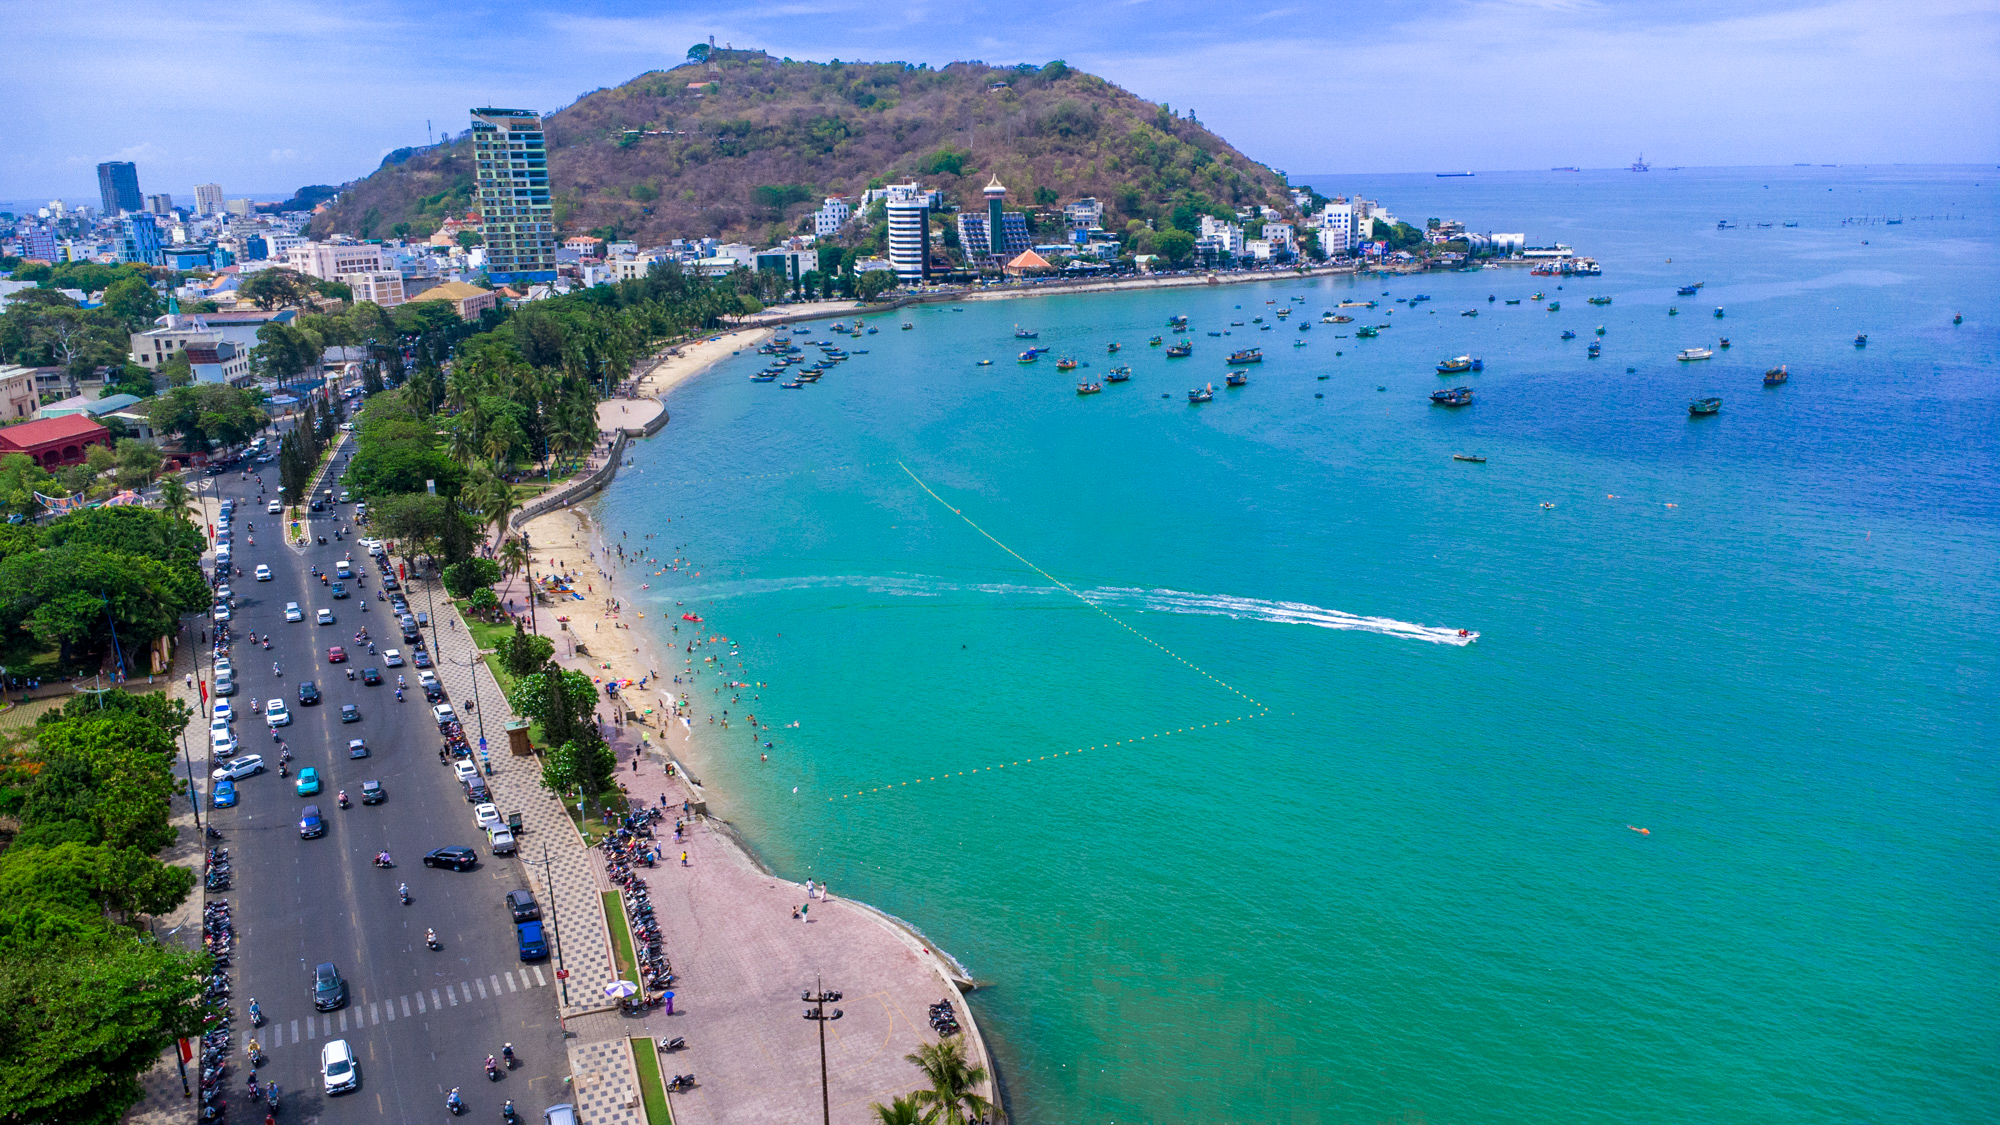 Đô thị loại một duy nhất nằm trên bán đảo, vừa có bờ biển đẹp top 5 Việt Nam, vừa thuộc tỉnh sở hữu hơn 93% trữ lượng dầu khí cả nước- Ảnh 14.